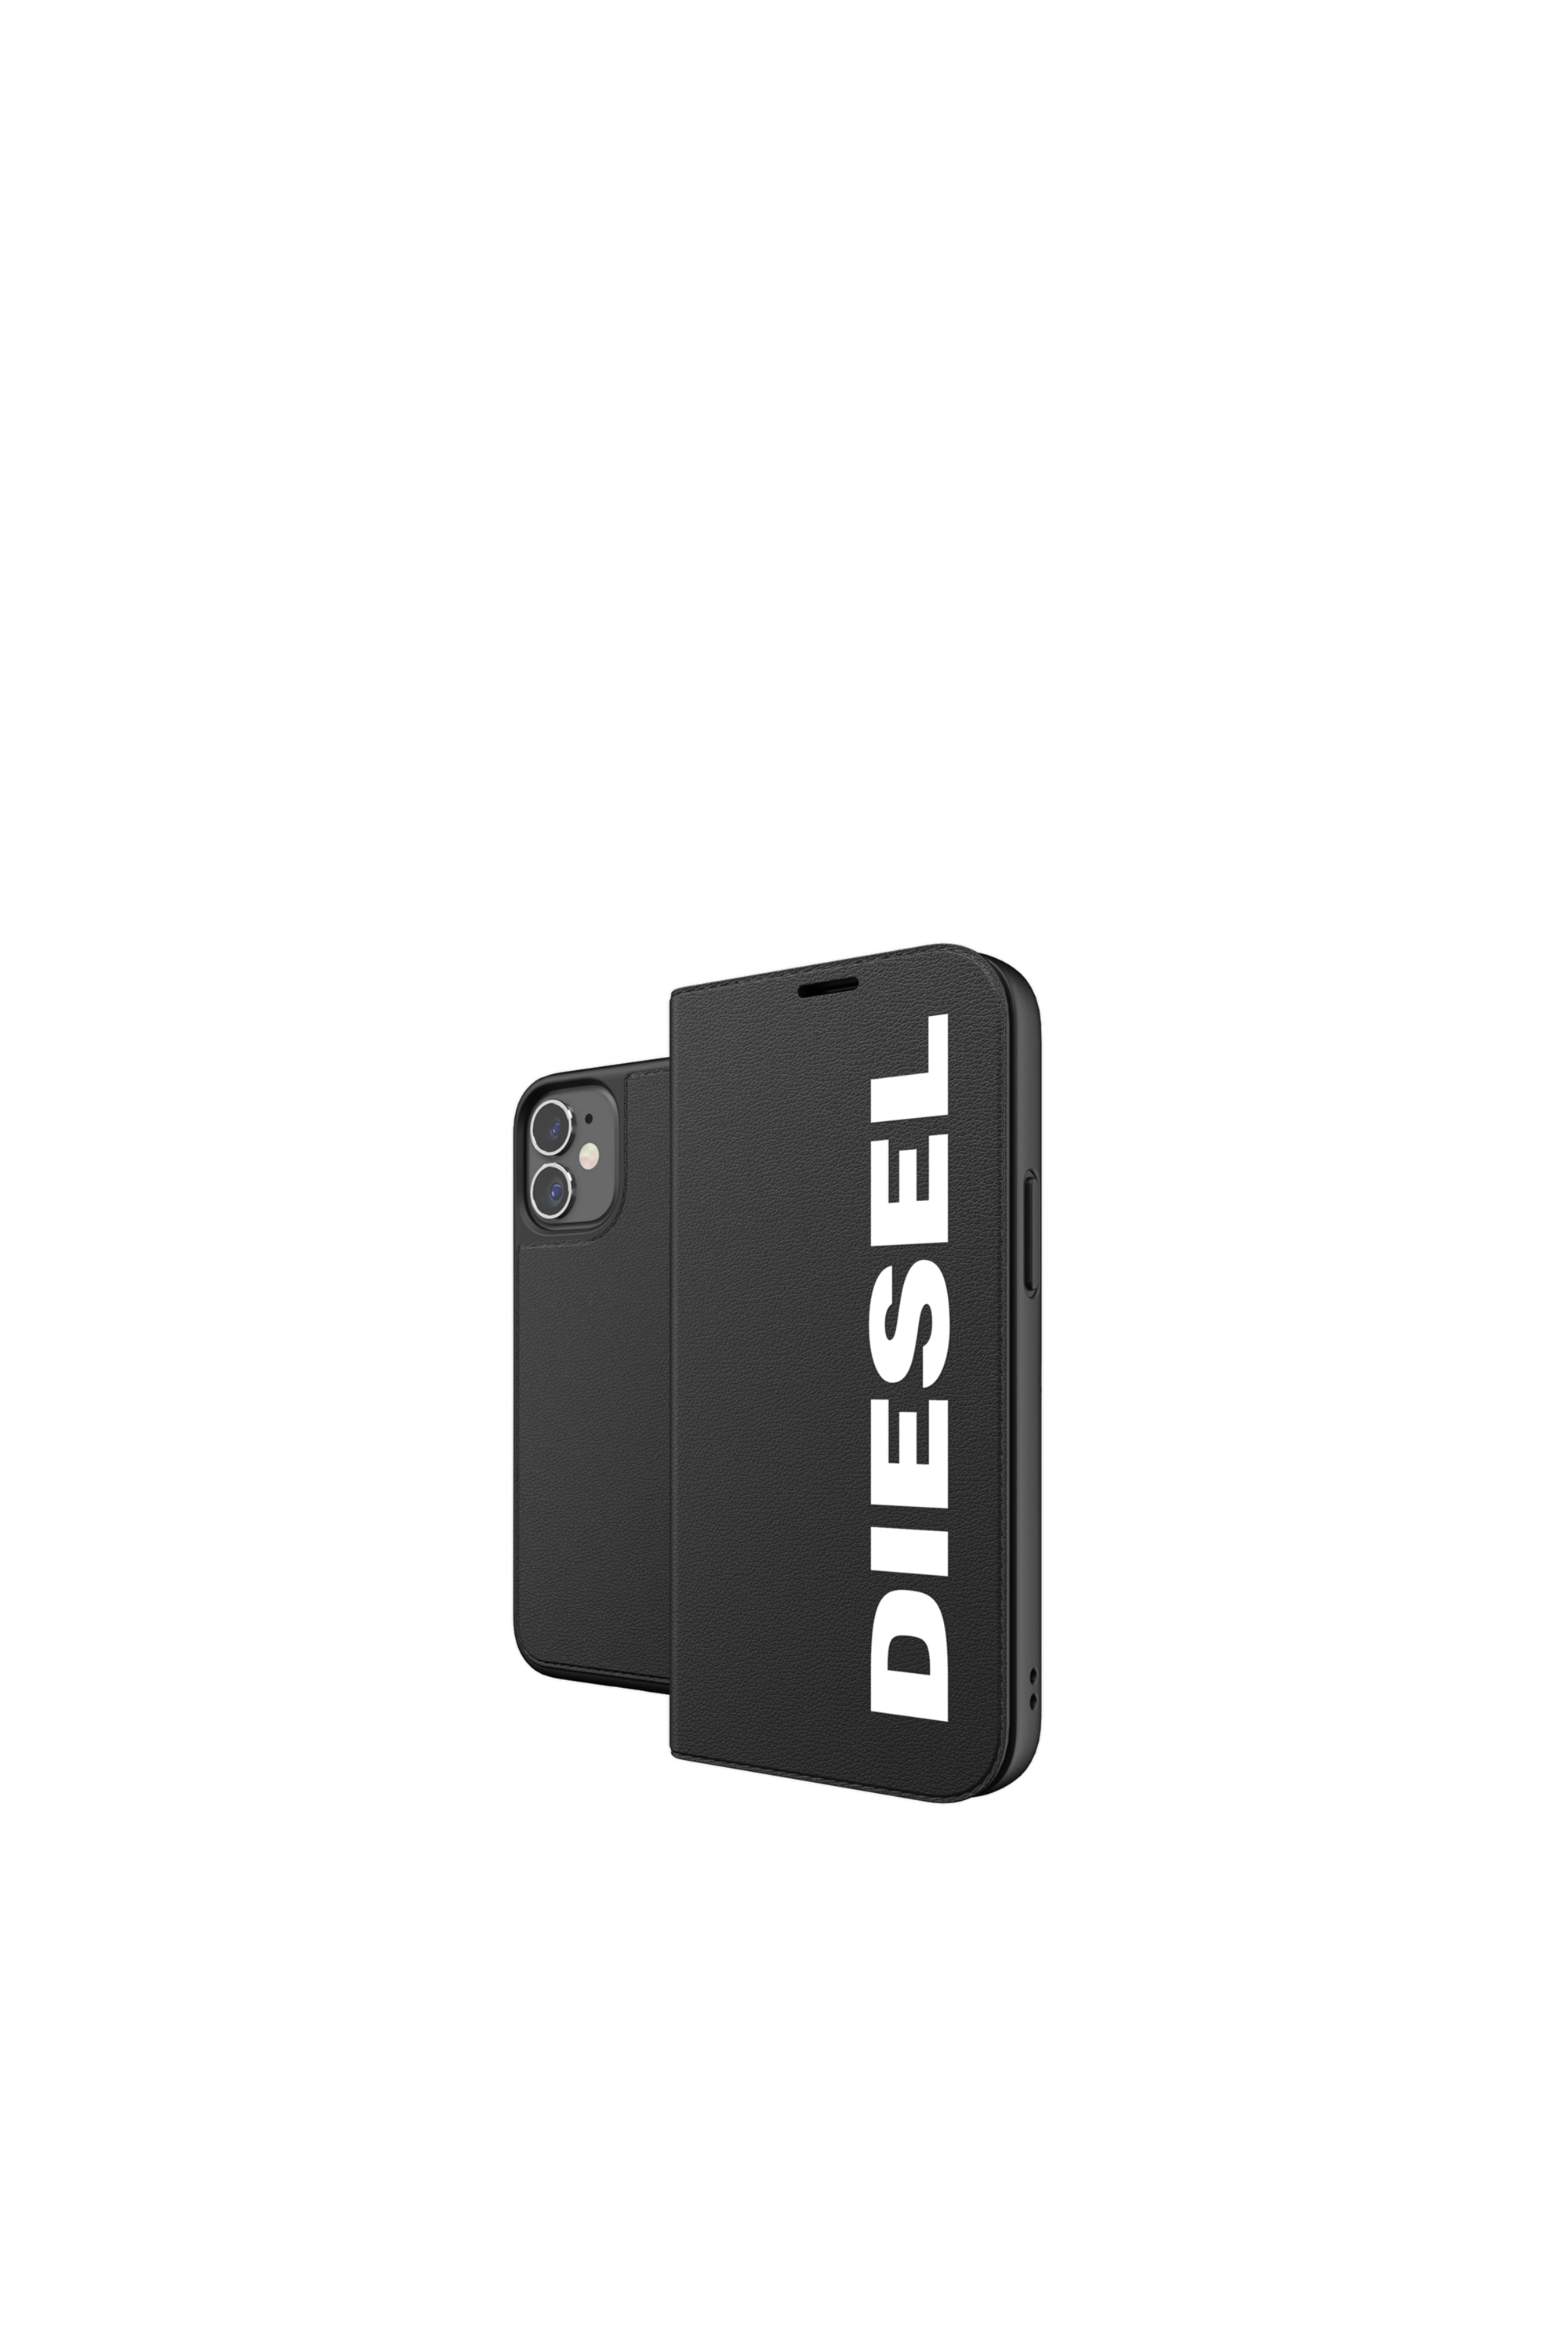 Diesel - 42485, Black - Image 1